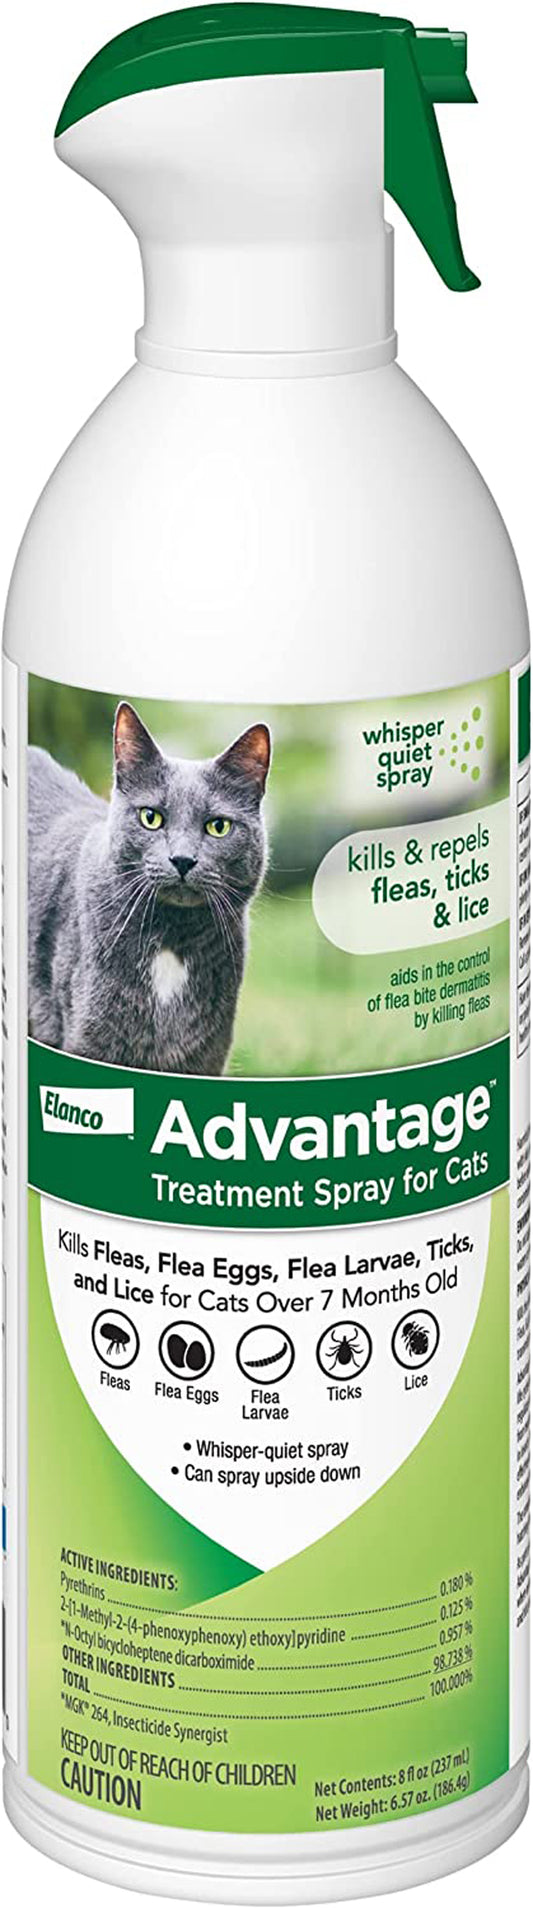 Advantage Cat Treatment Spray 8oz